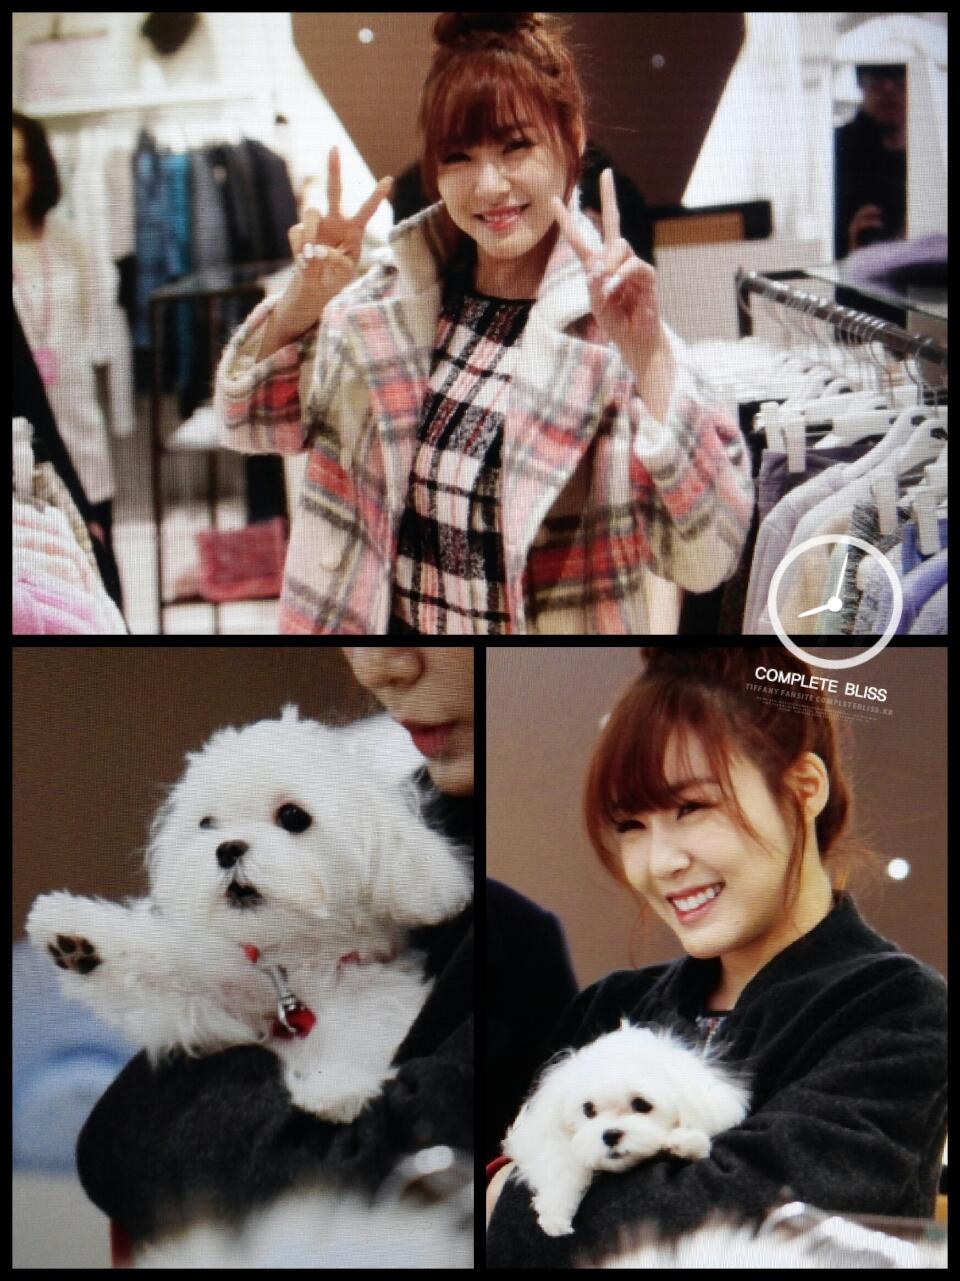 [PIC][28-11-2013]Tiffany ghé thăm cửa hàng "QUA" ở Hyundai Department Store vào trưa nay - Page 3 BaJCRZFCMAAKeOS